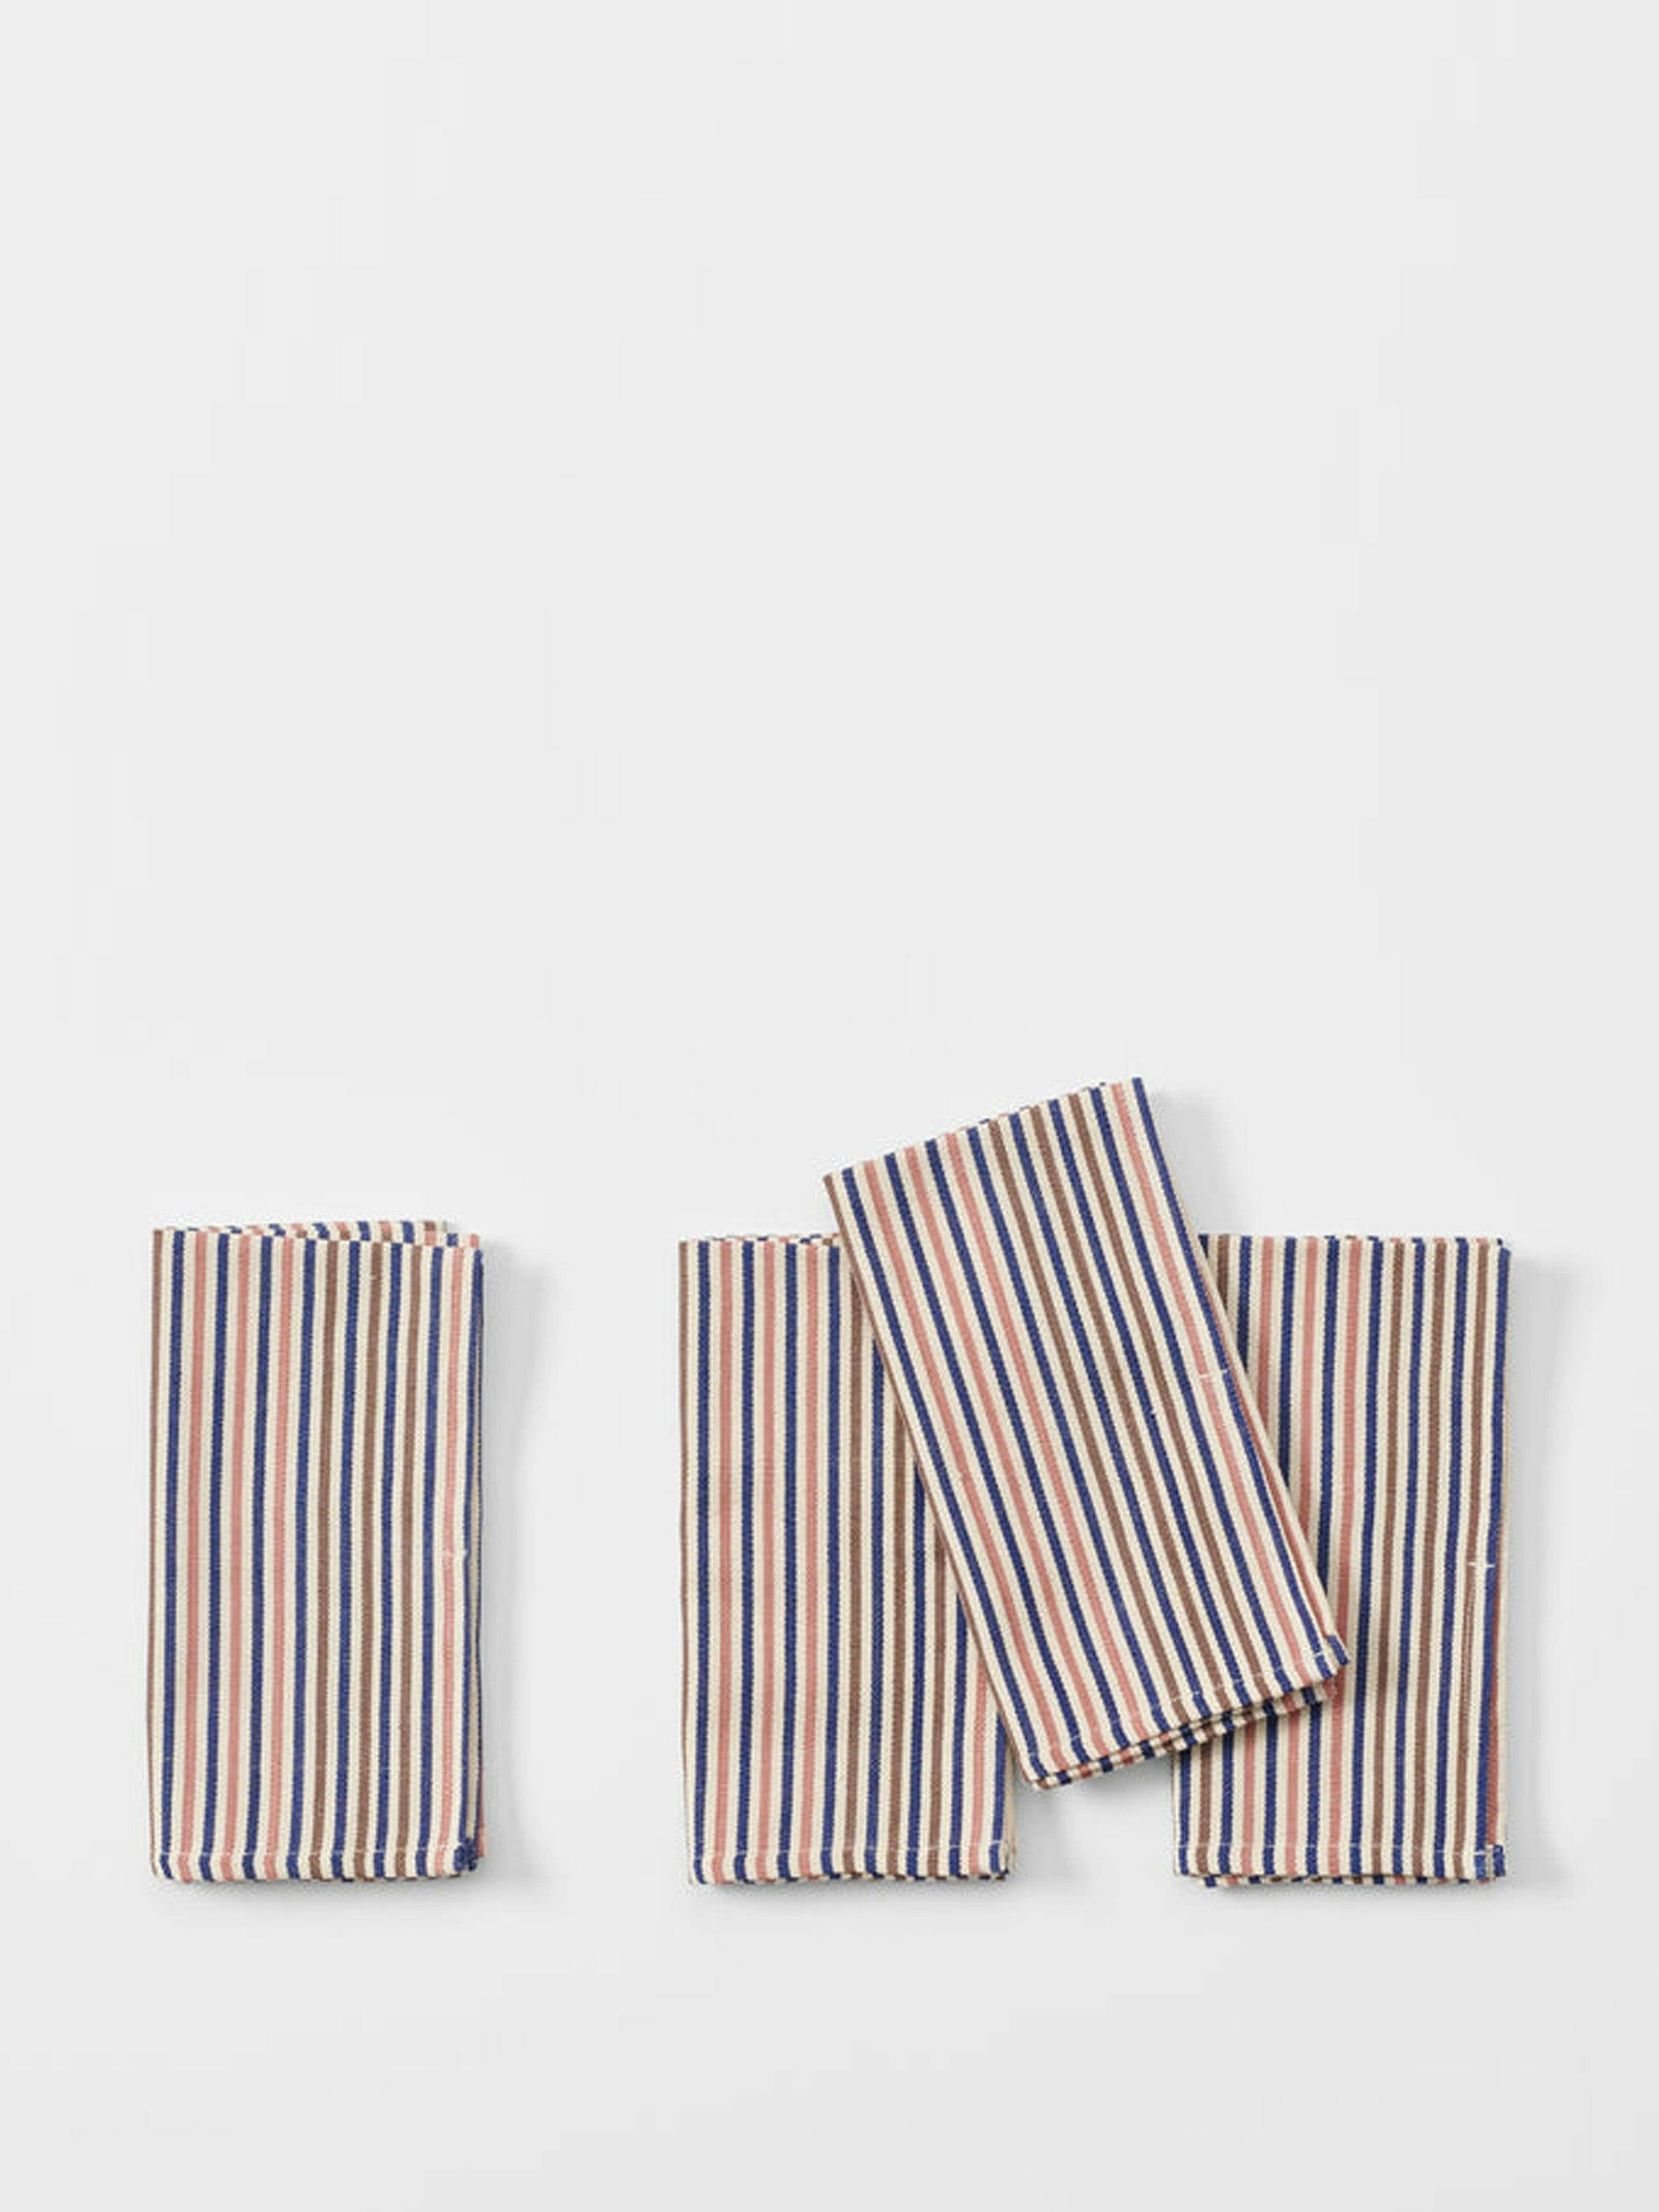 Multicoloured stripe napkin